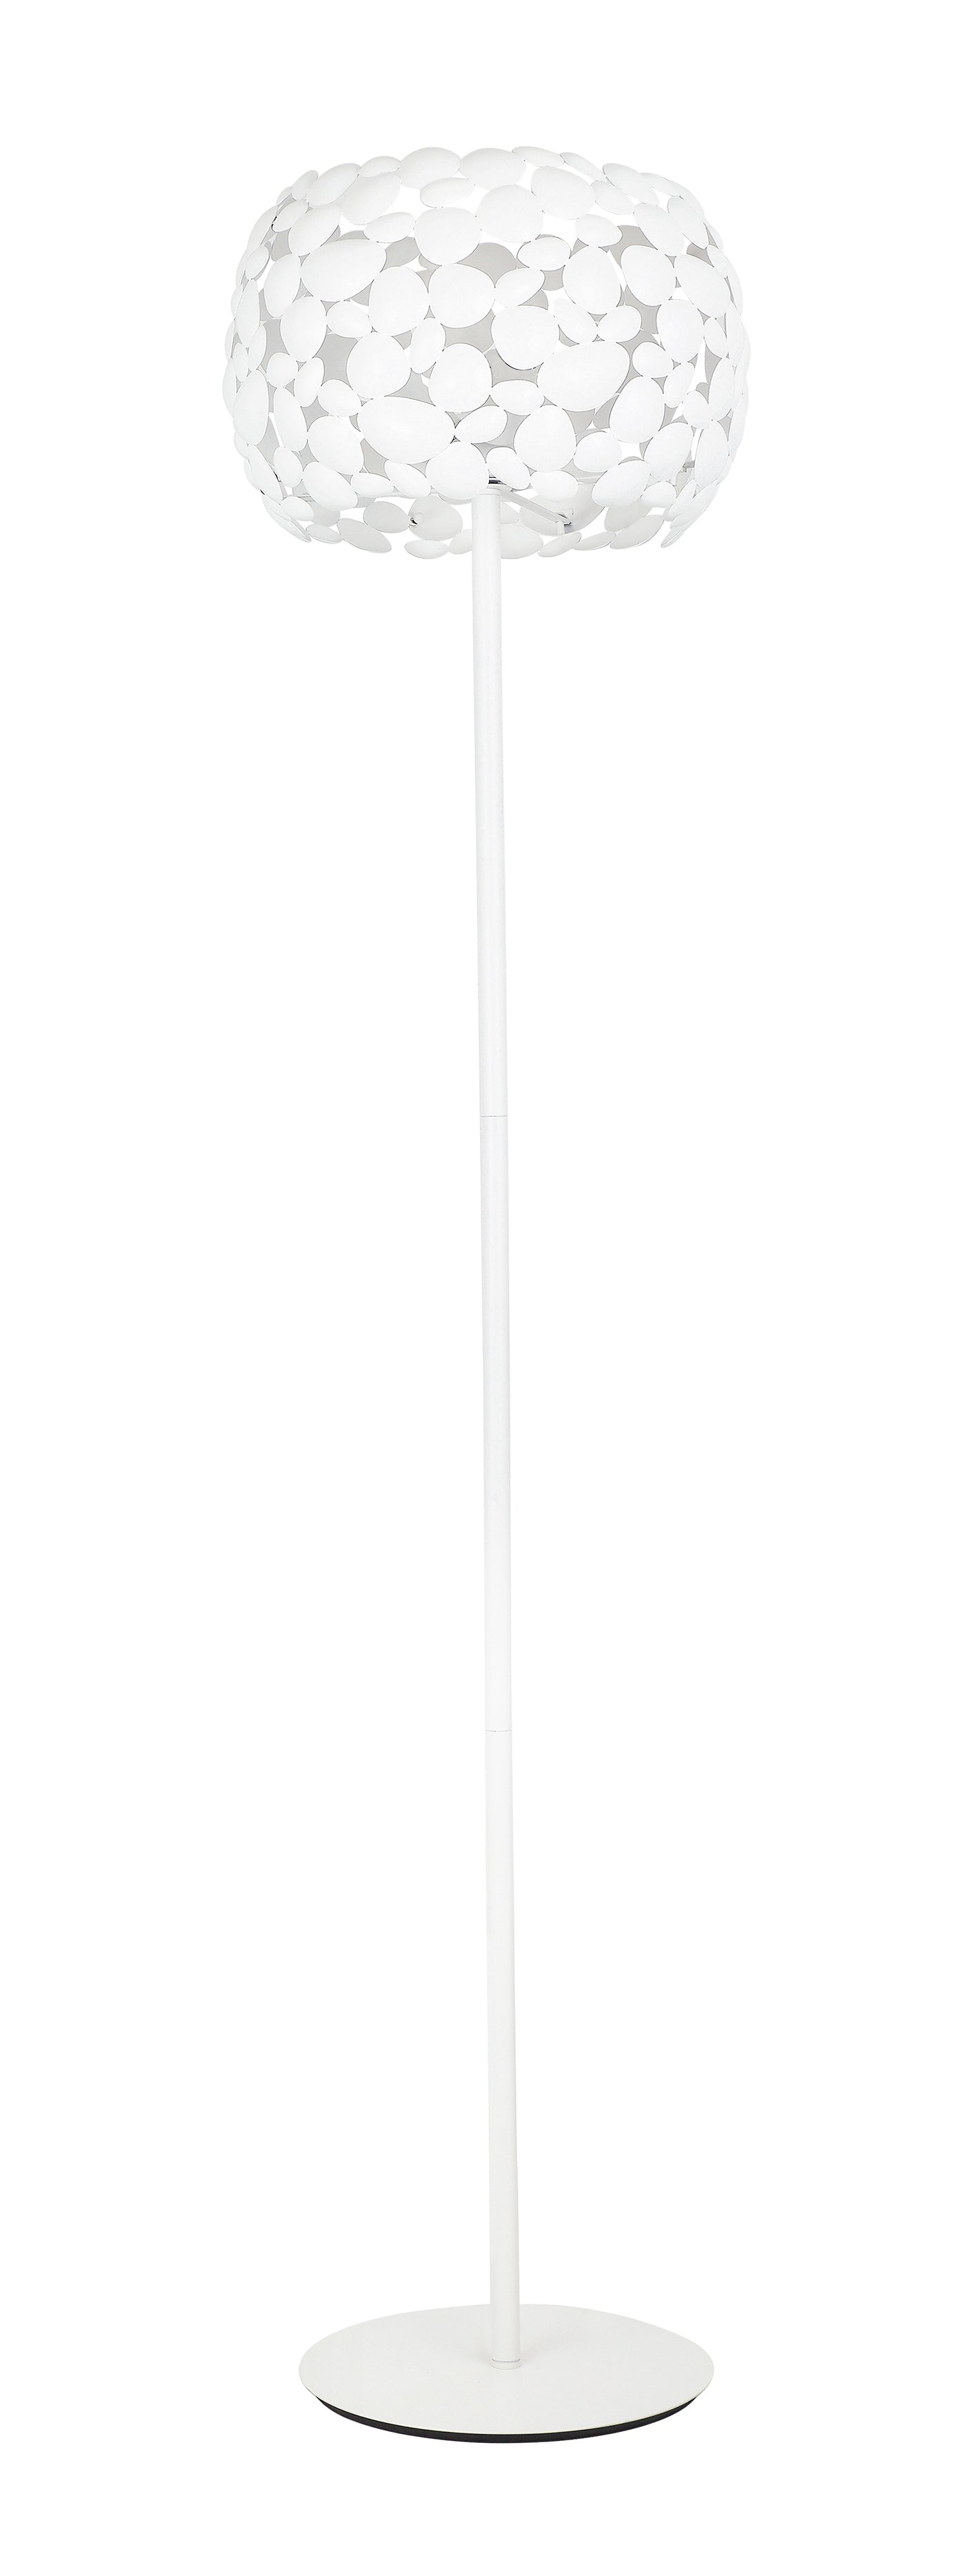 piantana dioniso bianca 3xe27 40x163cm